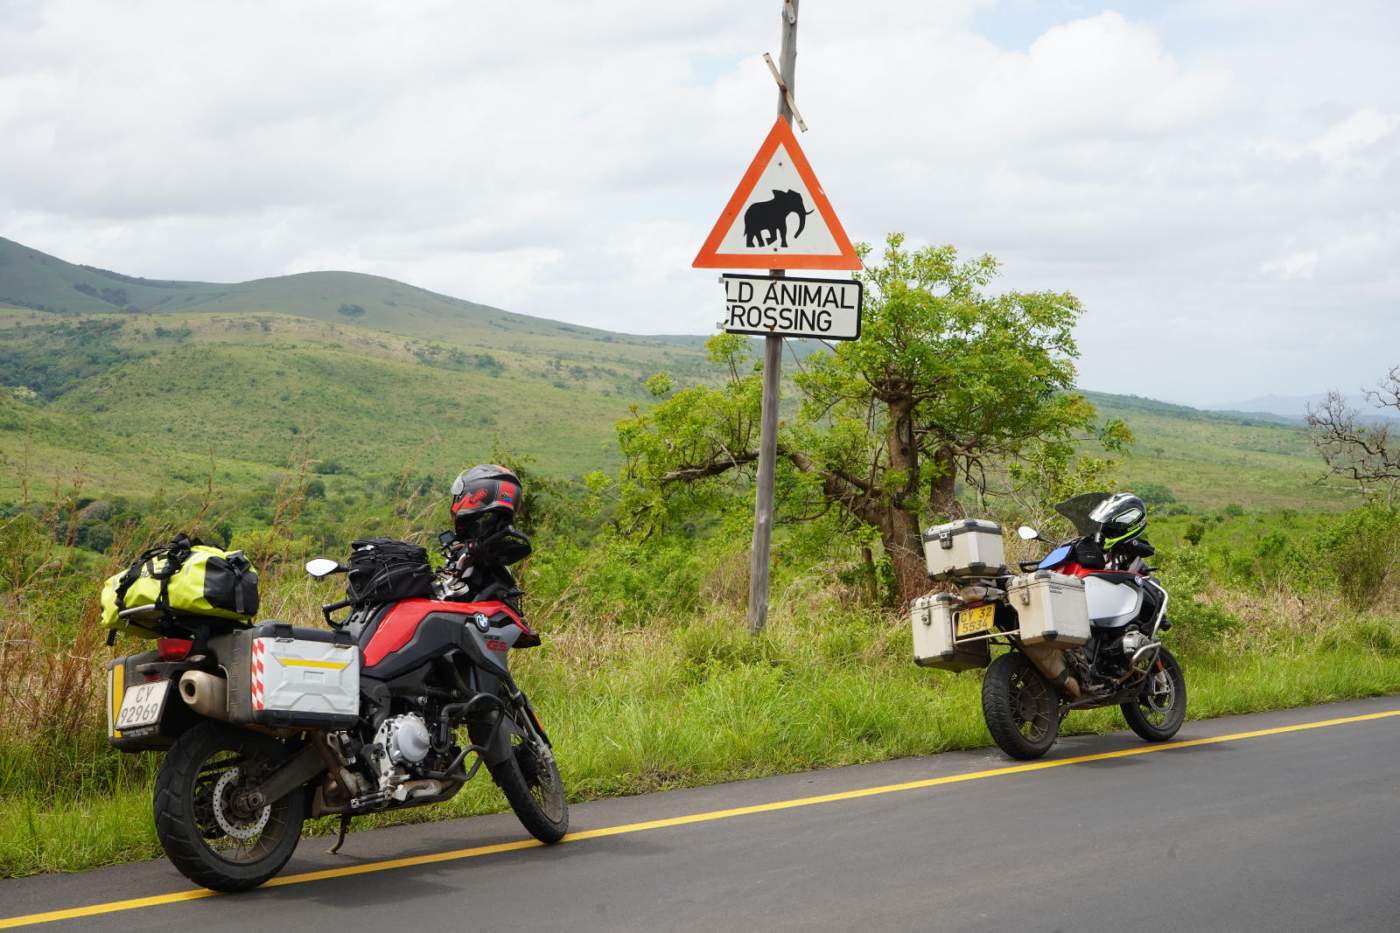 Auf dem Weg durch die KwaZulu Natal Midlands stoppen wir unsere Motorräder immer Mal wieder um die Landschaft zu genießen und Fotos zu machen. Unterwegs können wir durchaus auf Wildtiere treffen, darauf weisen auch einige Straßenschilder hin.